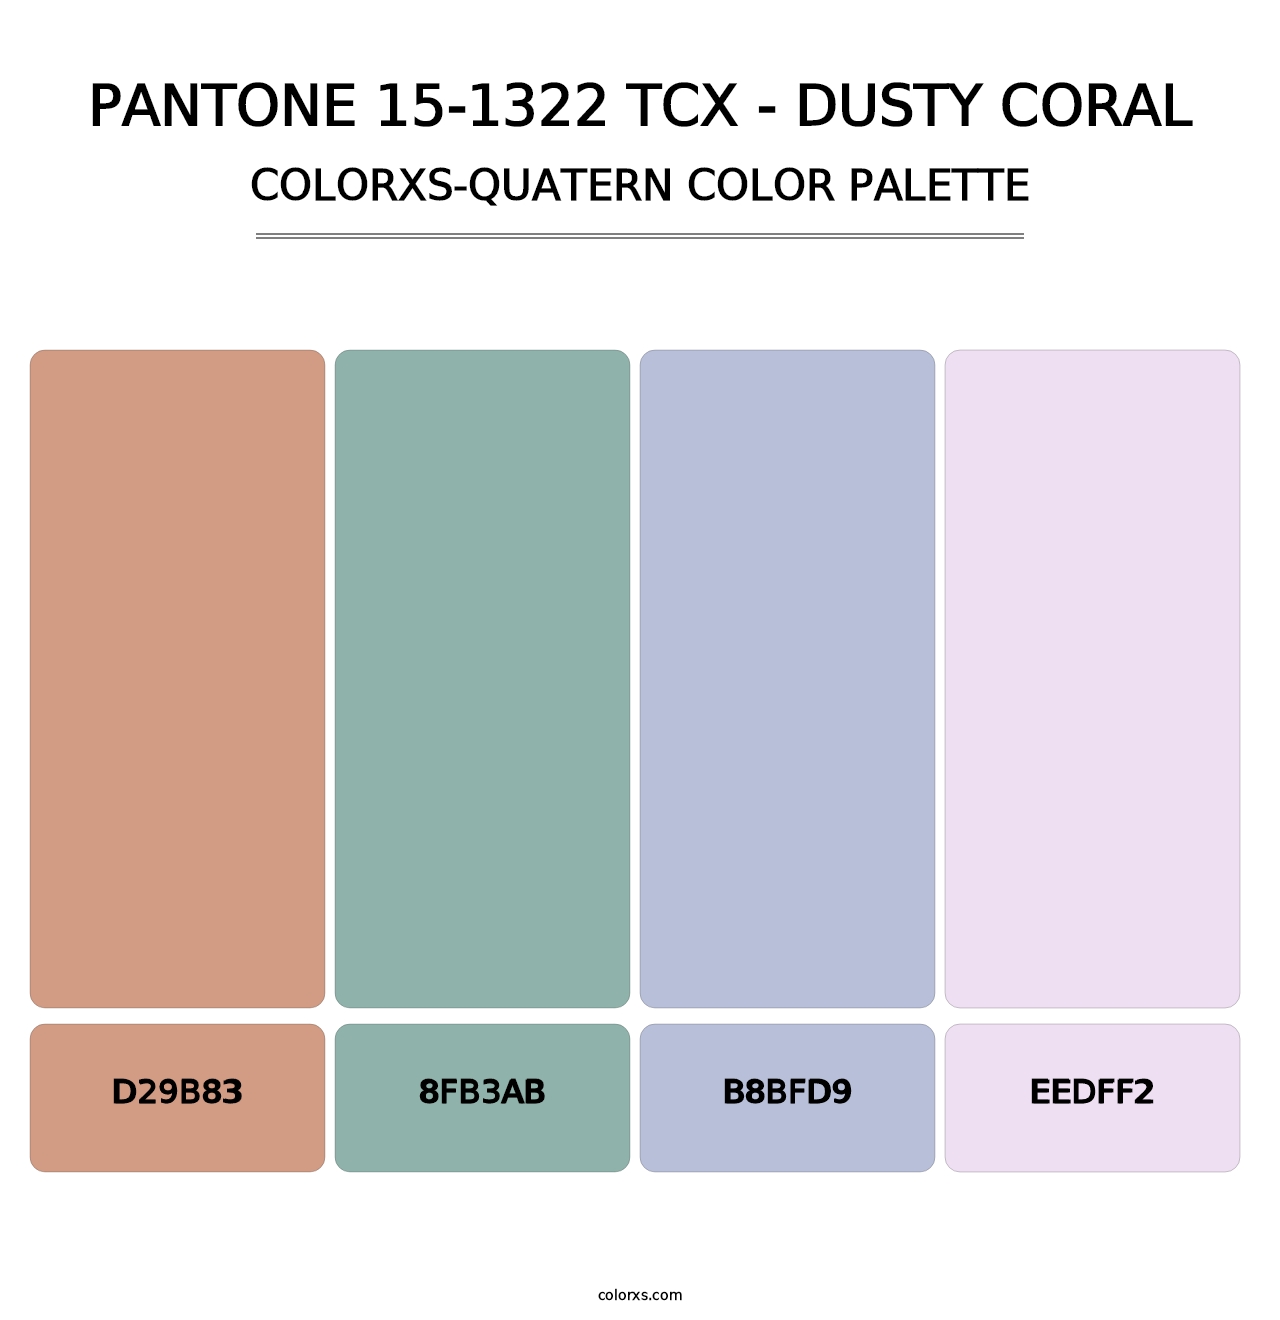 PANTONE 15-1322 TCX - Dusty Coral - Colorxs Quatern Palette